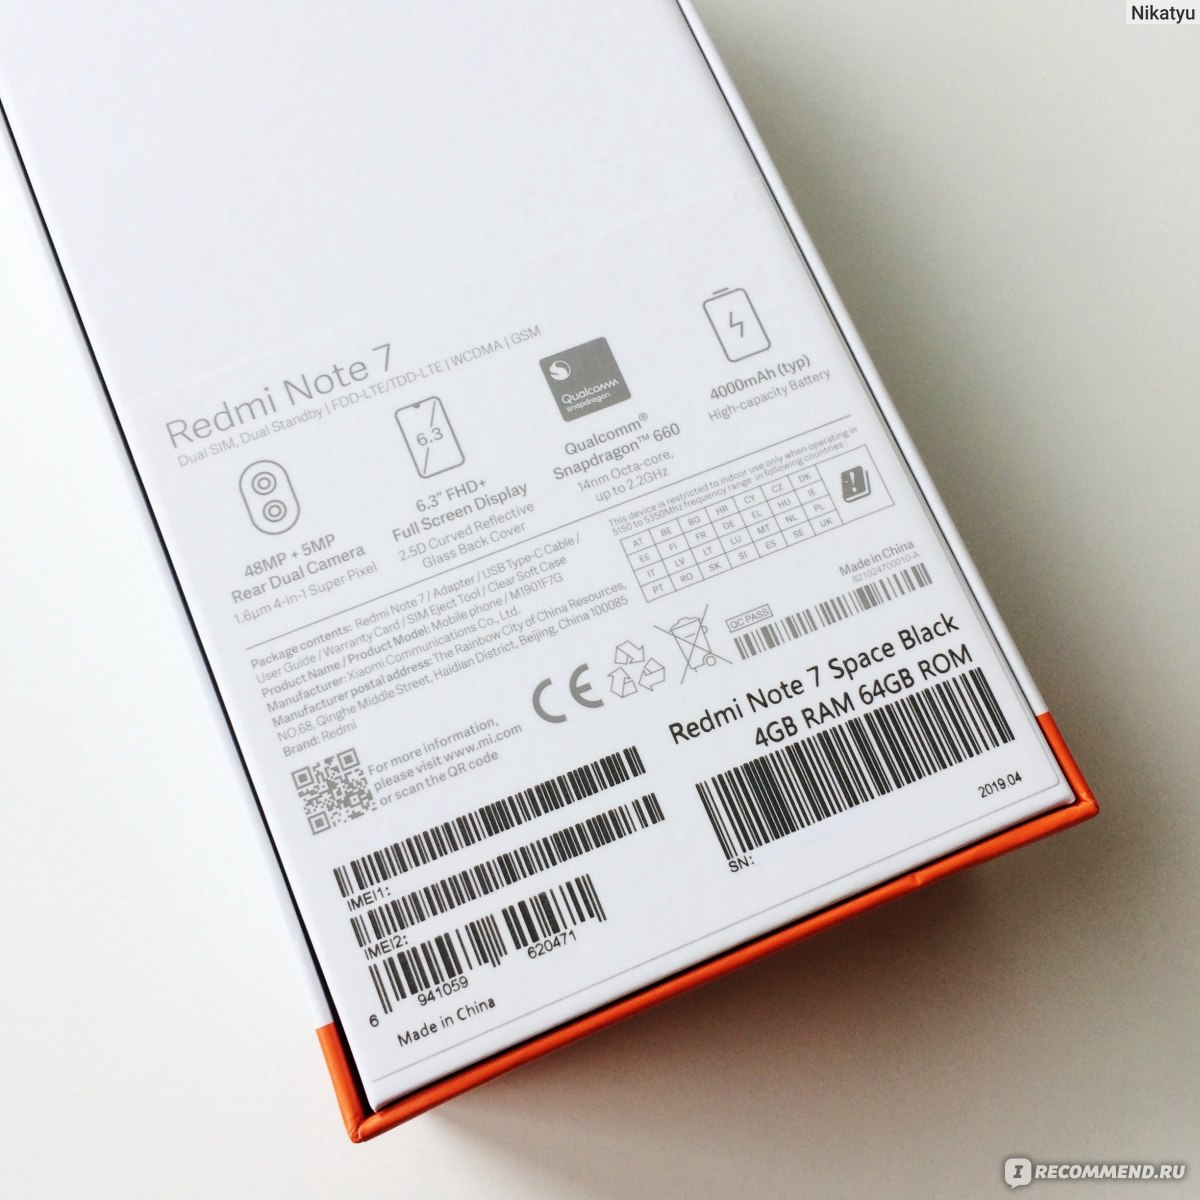 Xiaomi redmi note 8 ростест. Redmi Note 9 коробка IMEI. 10 S Xiaomi коробка Note. Xiaomi Redmi Note 9s коробка. Xiaomi Redmi Note 7 коробка.